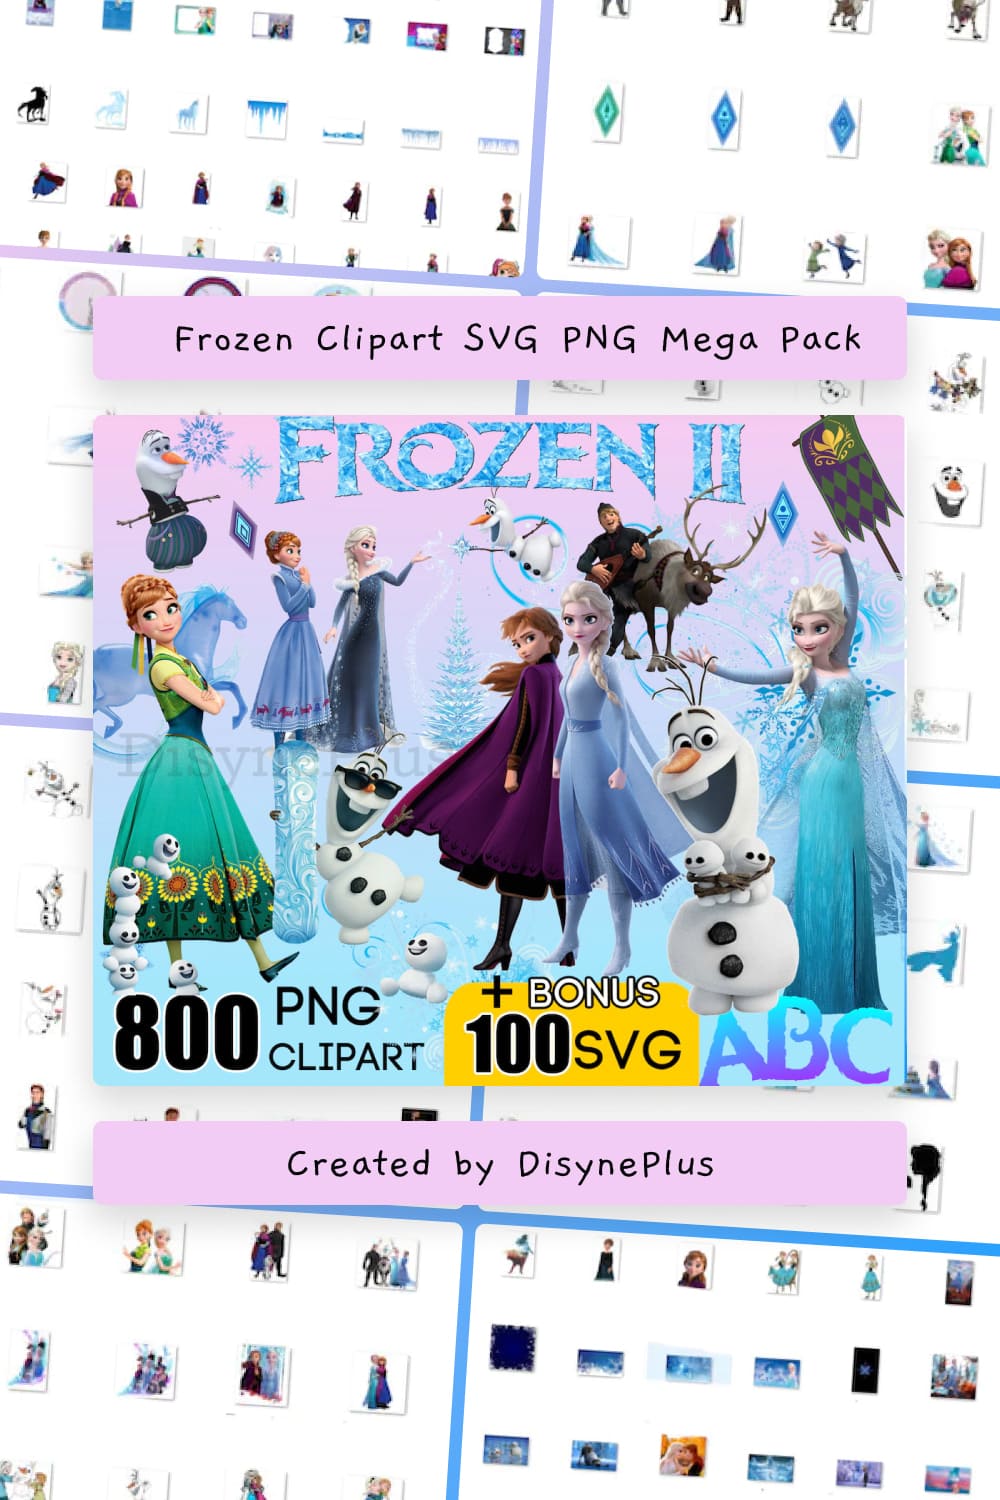 Frozen Clipart SVG PNG Mega Pack.